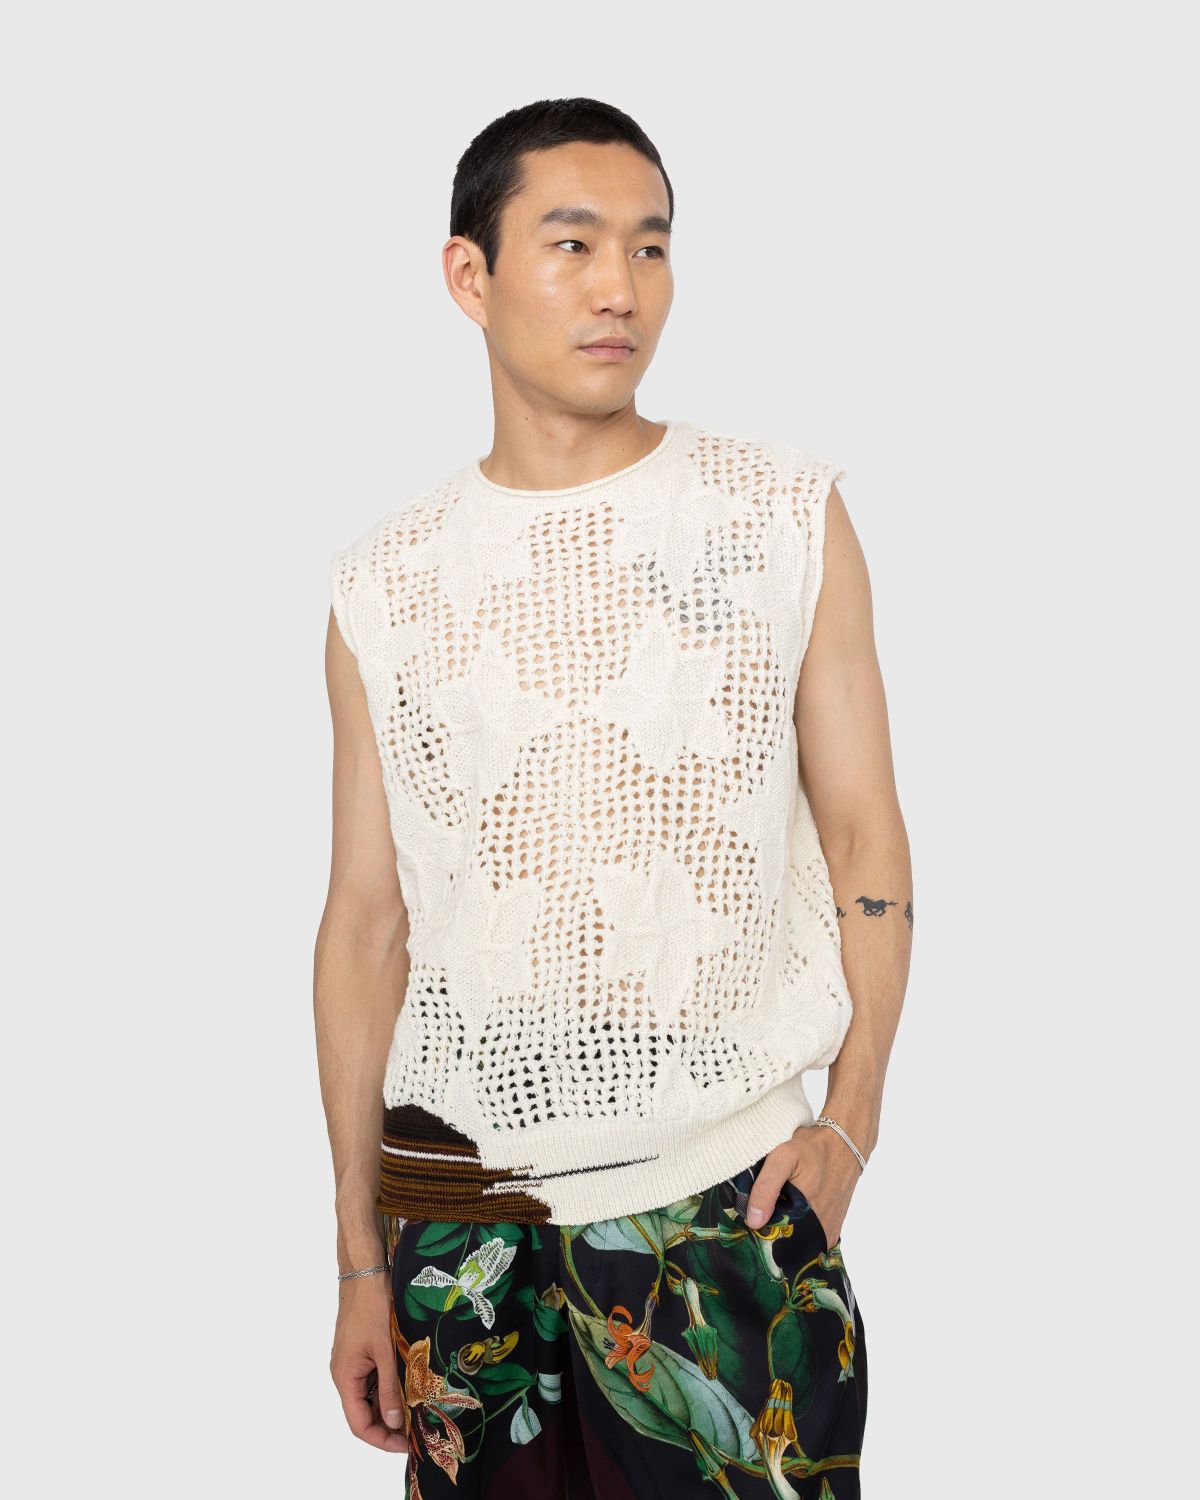 Dries van Noten – Meddo Knit Sweater Vest Ecru - Knitwear - White - Image 2